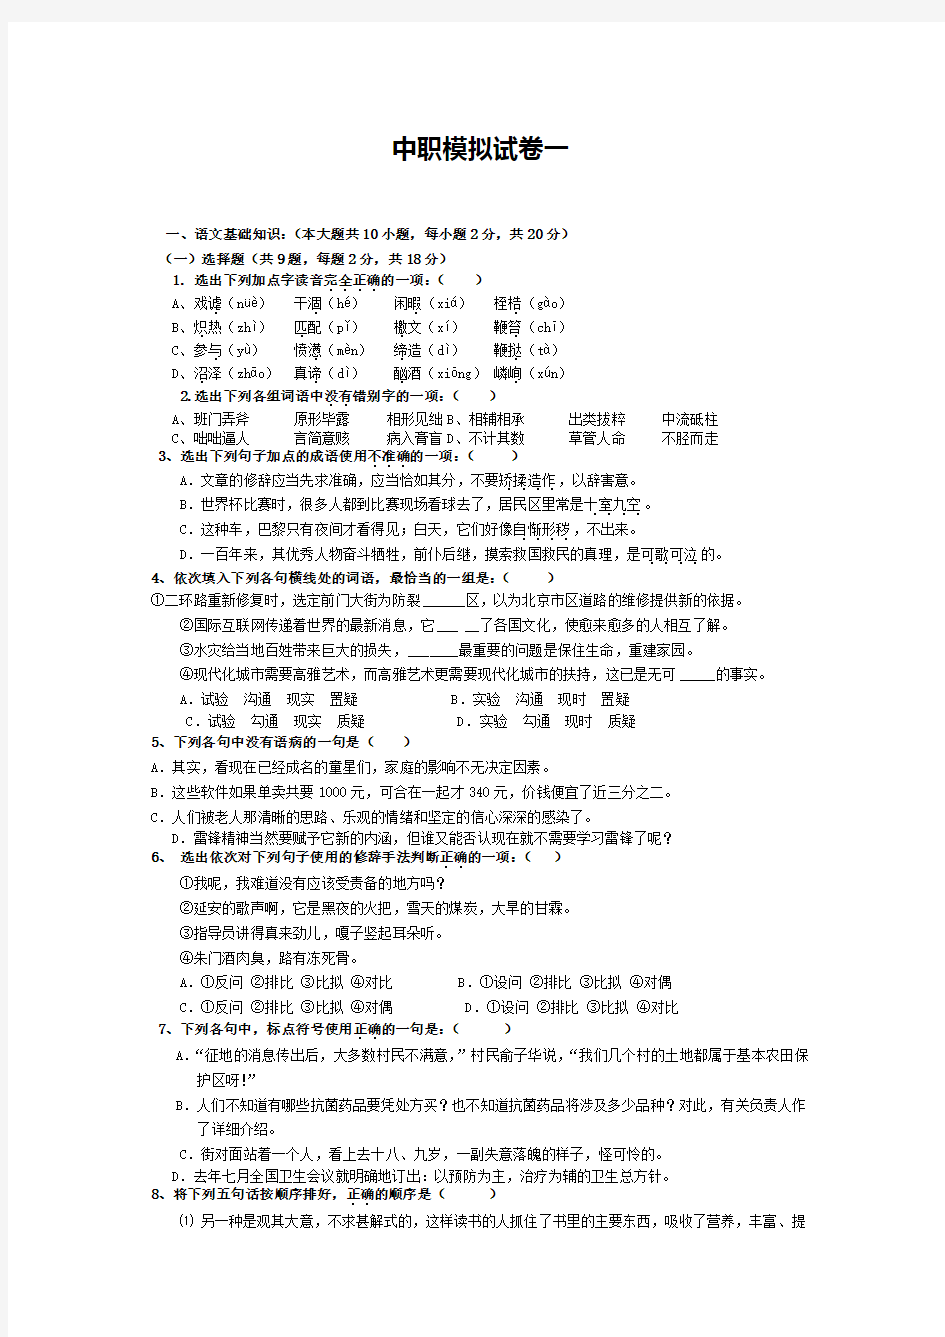 2019年高职单招(面向中职)语文模拟试卷